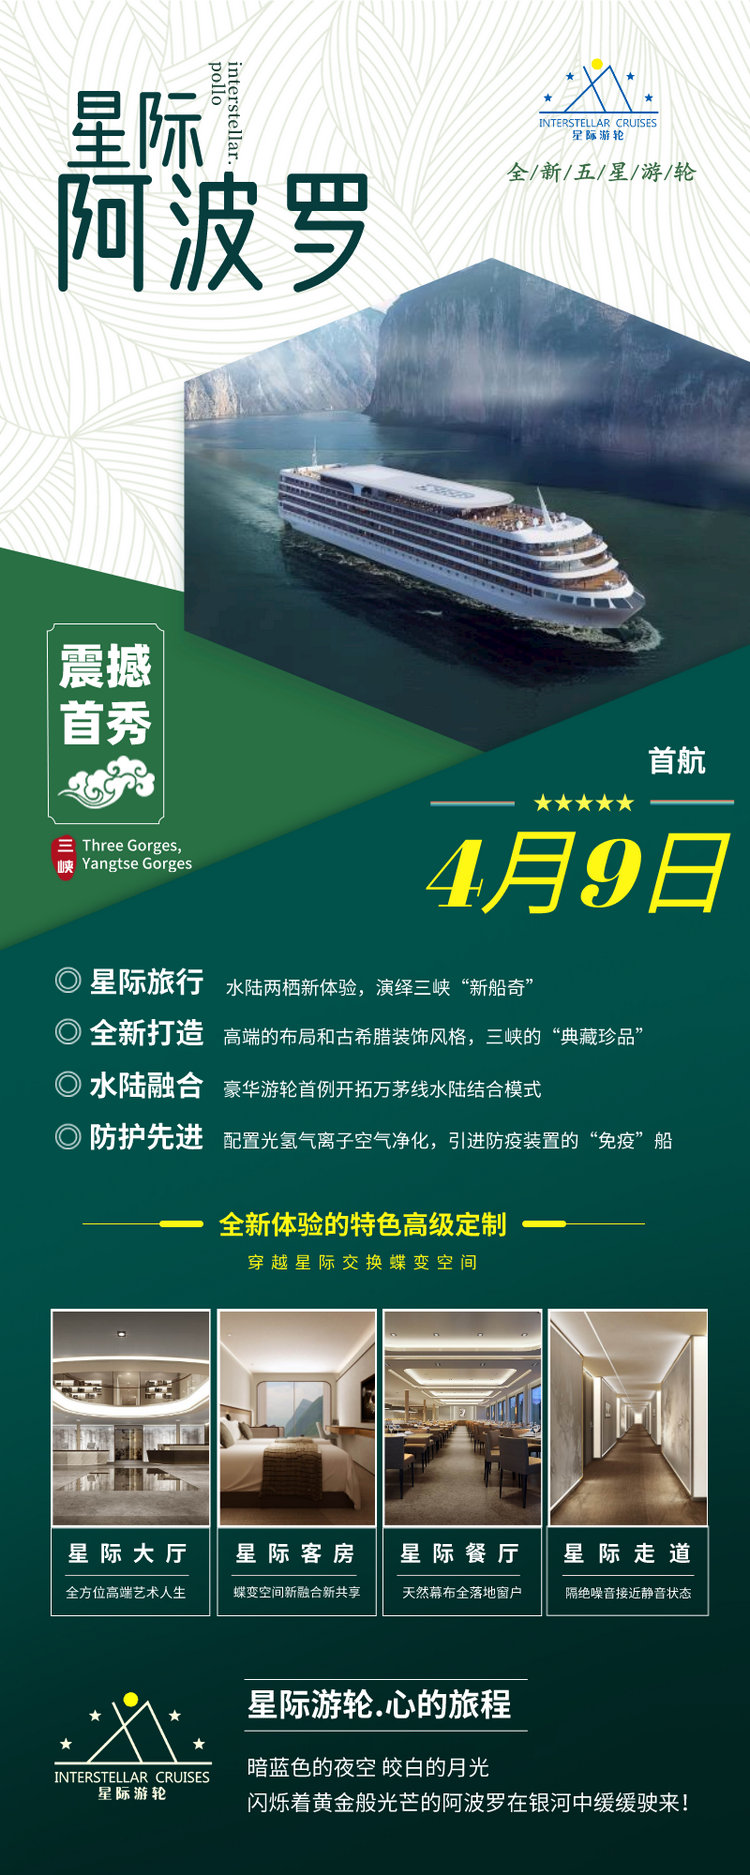 星际阿波罗号官网介绍，宜昌到重庆三峡旅游第六代五星级涉外豪华游轮